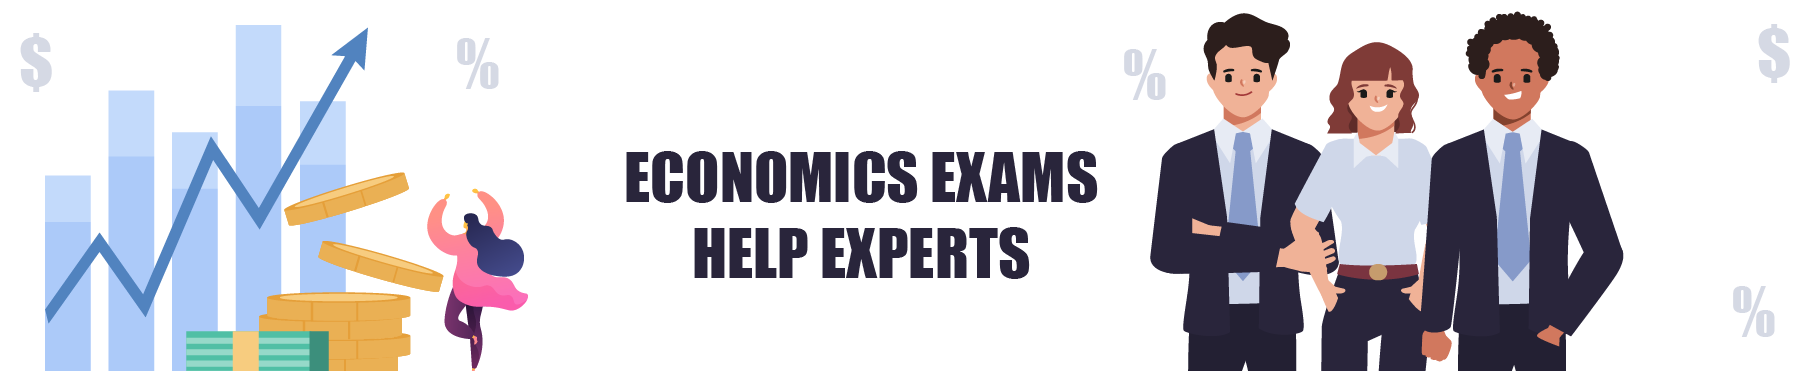 Economics exam help experts